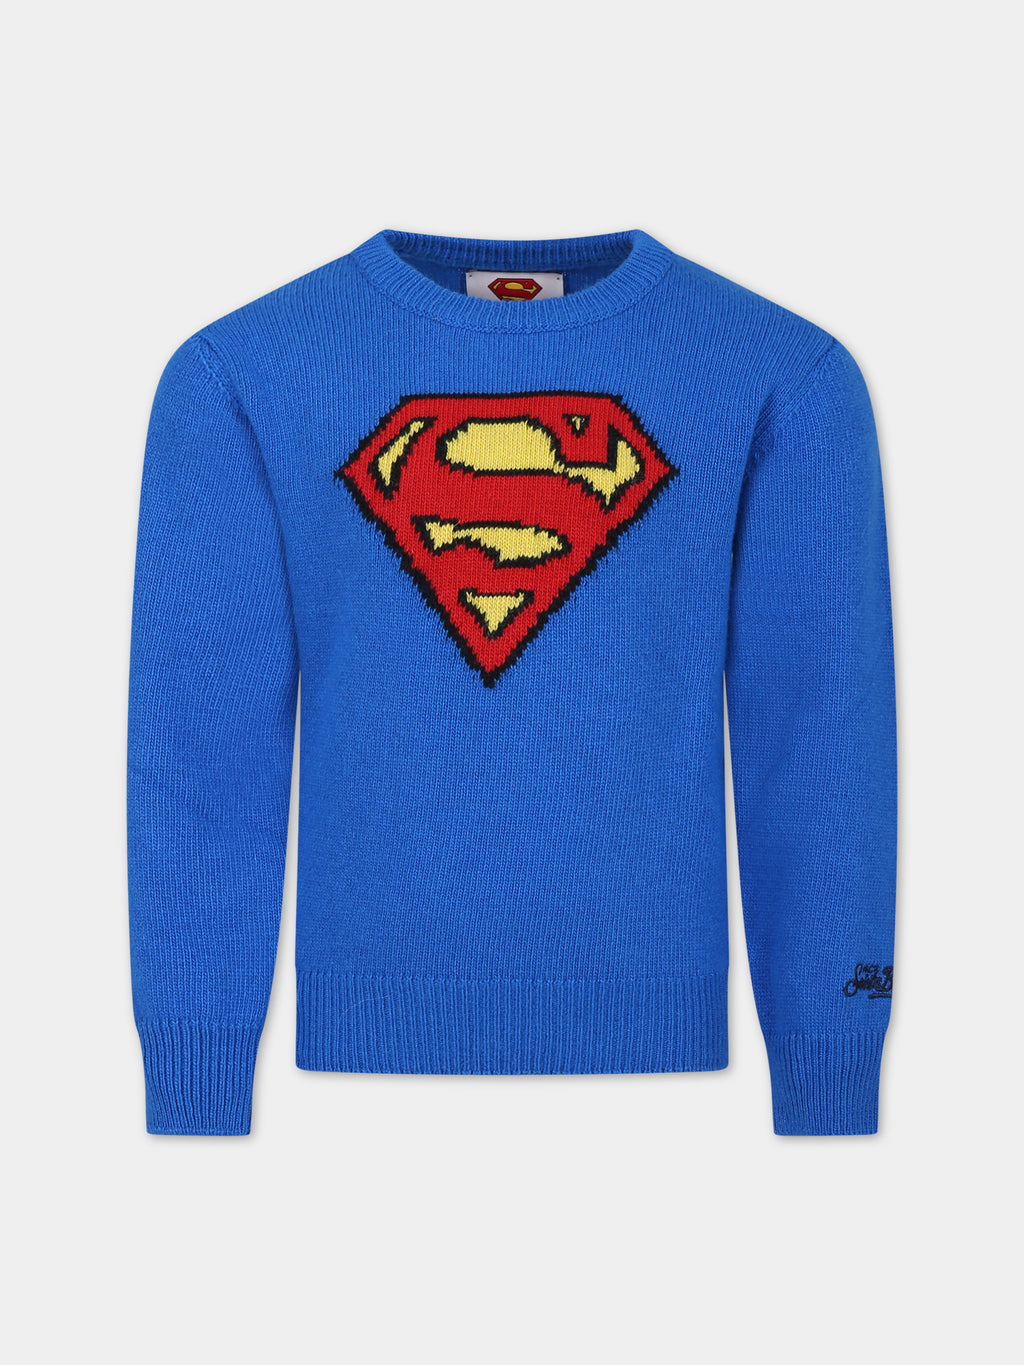 Maglione azzurro per bambino con Superman